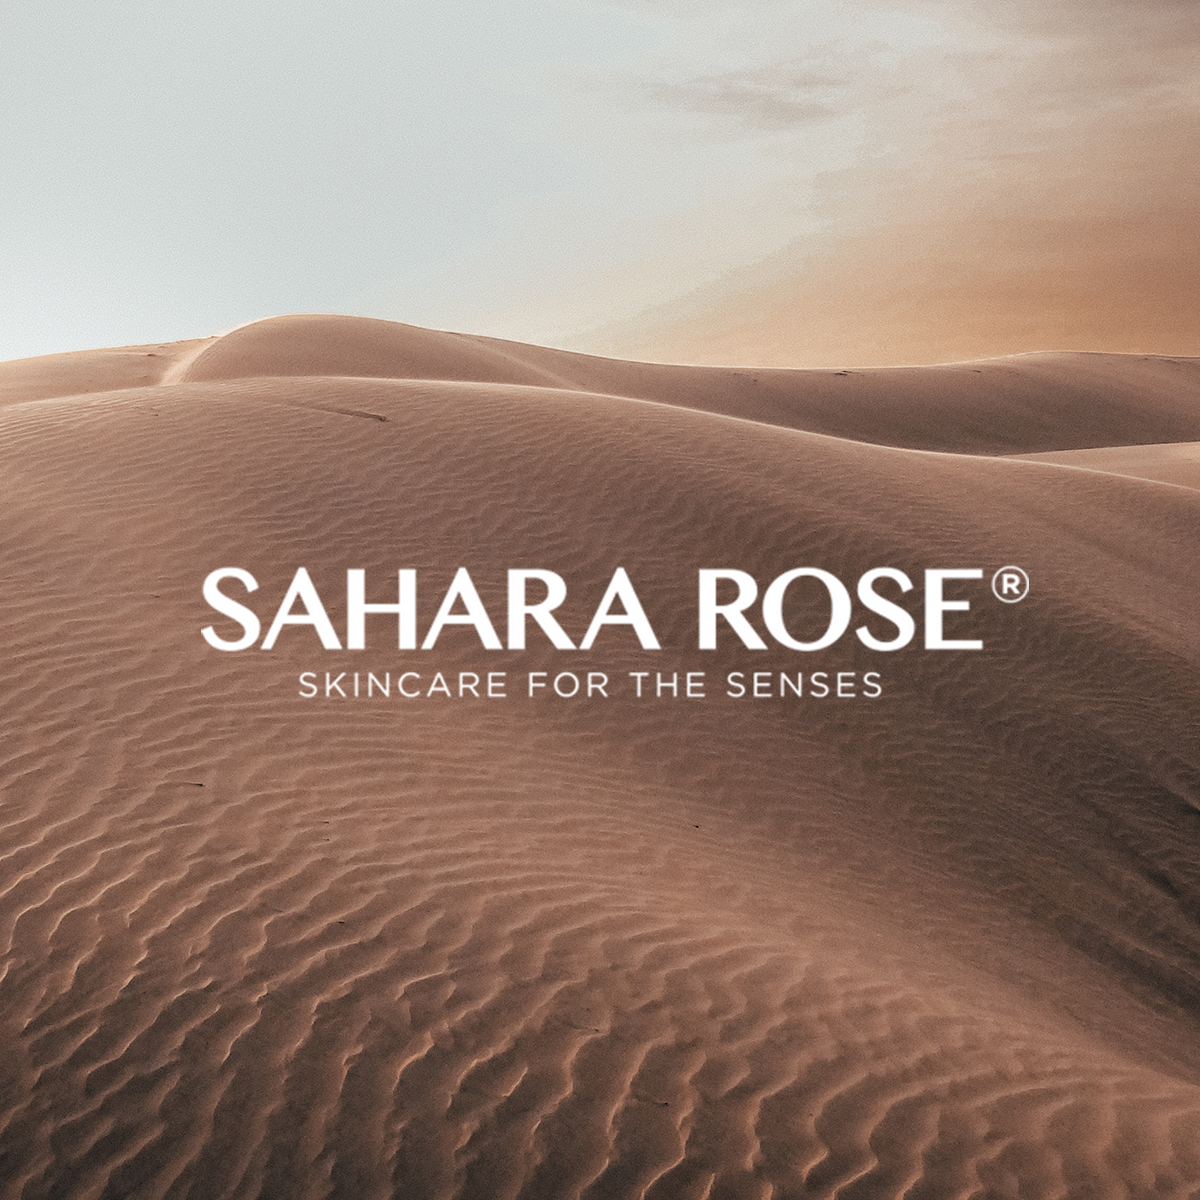 Sahara Desert with Sahara Rose Logo